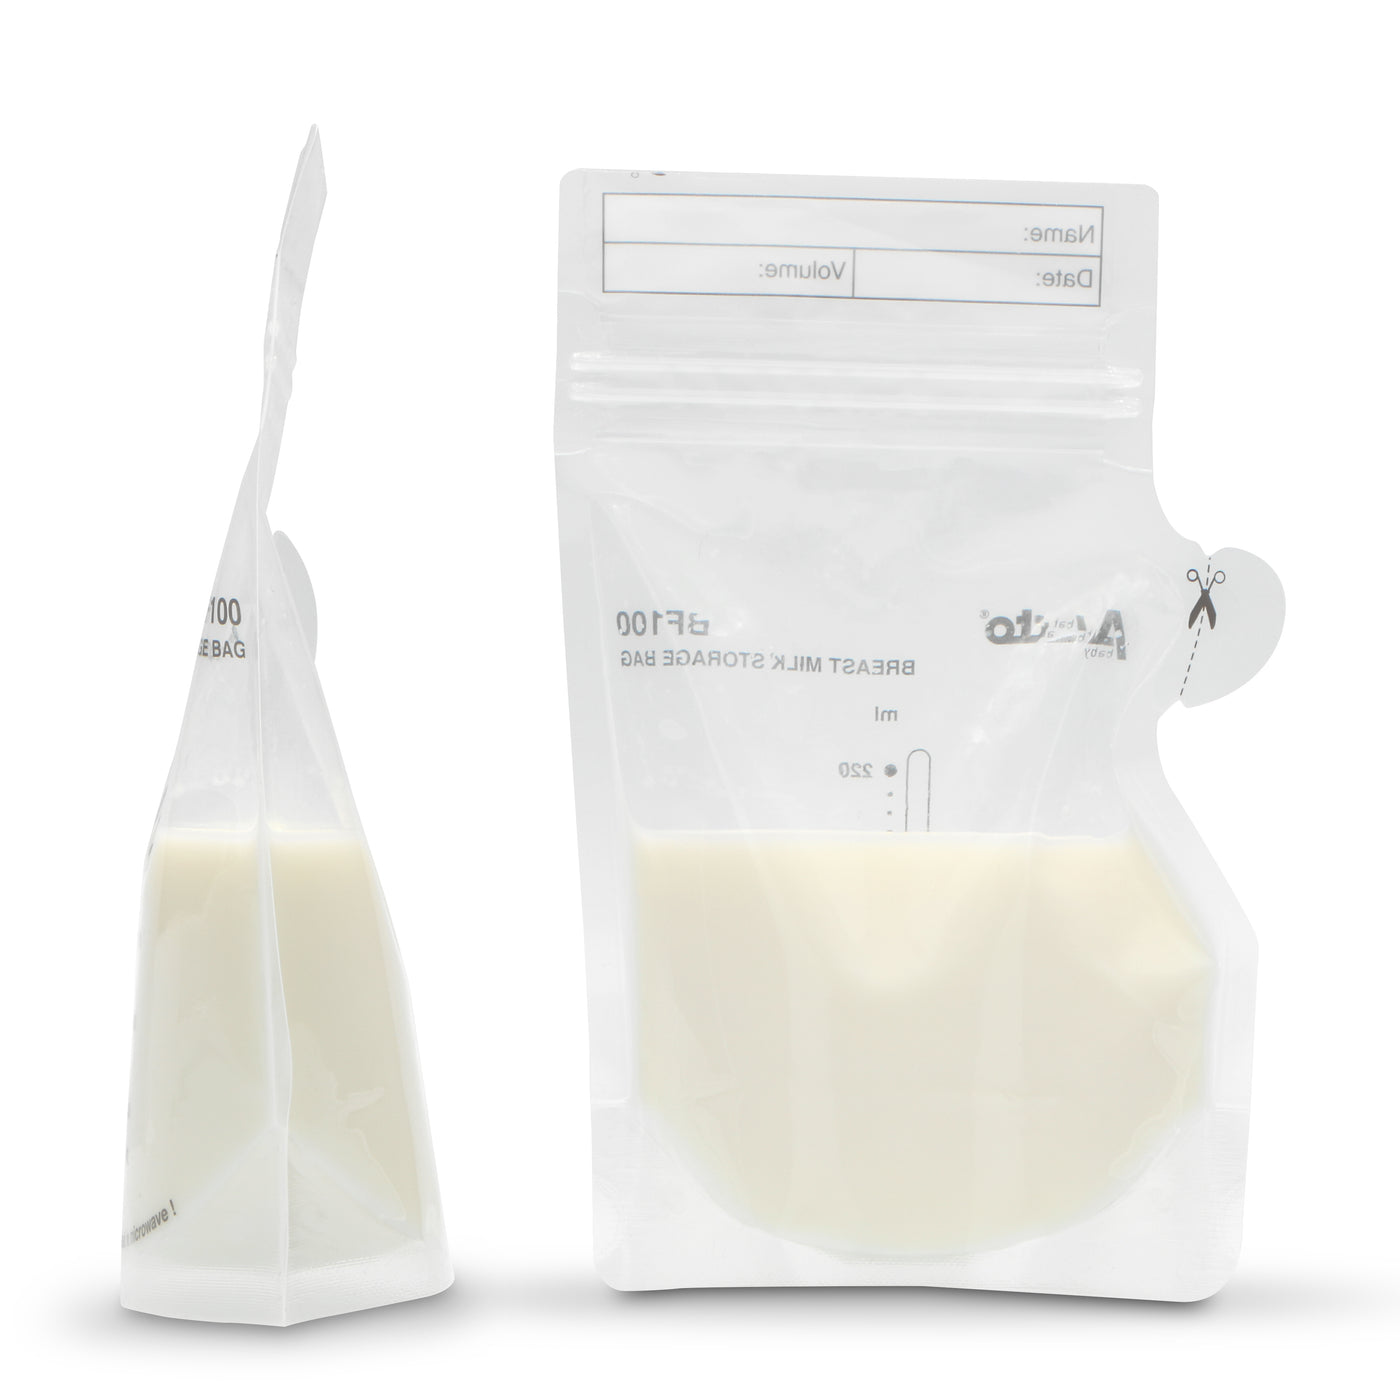 Alecto BF100 - Sacs de conservation lait maternel 220ml, 100 pièces